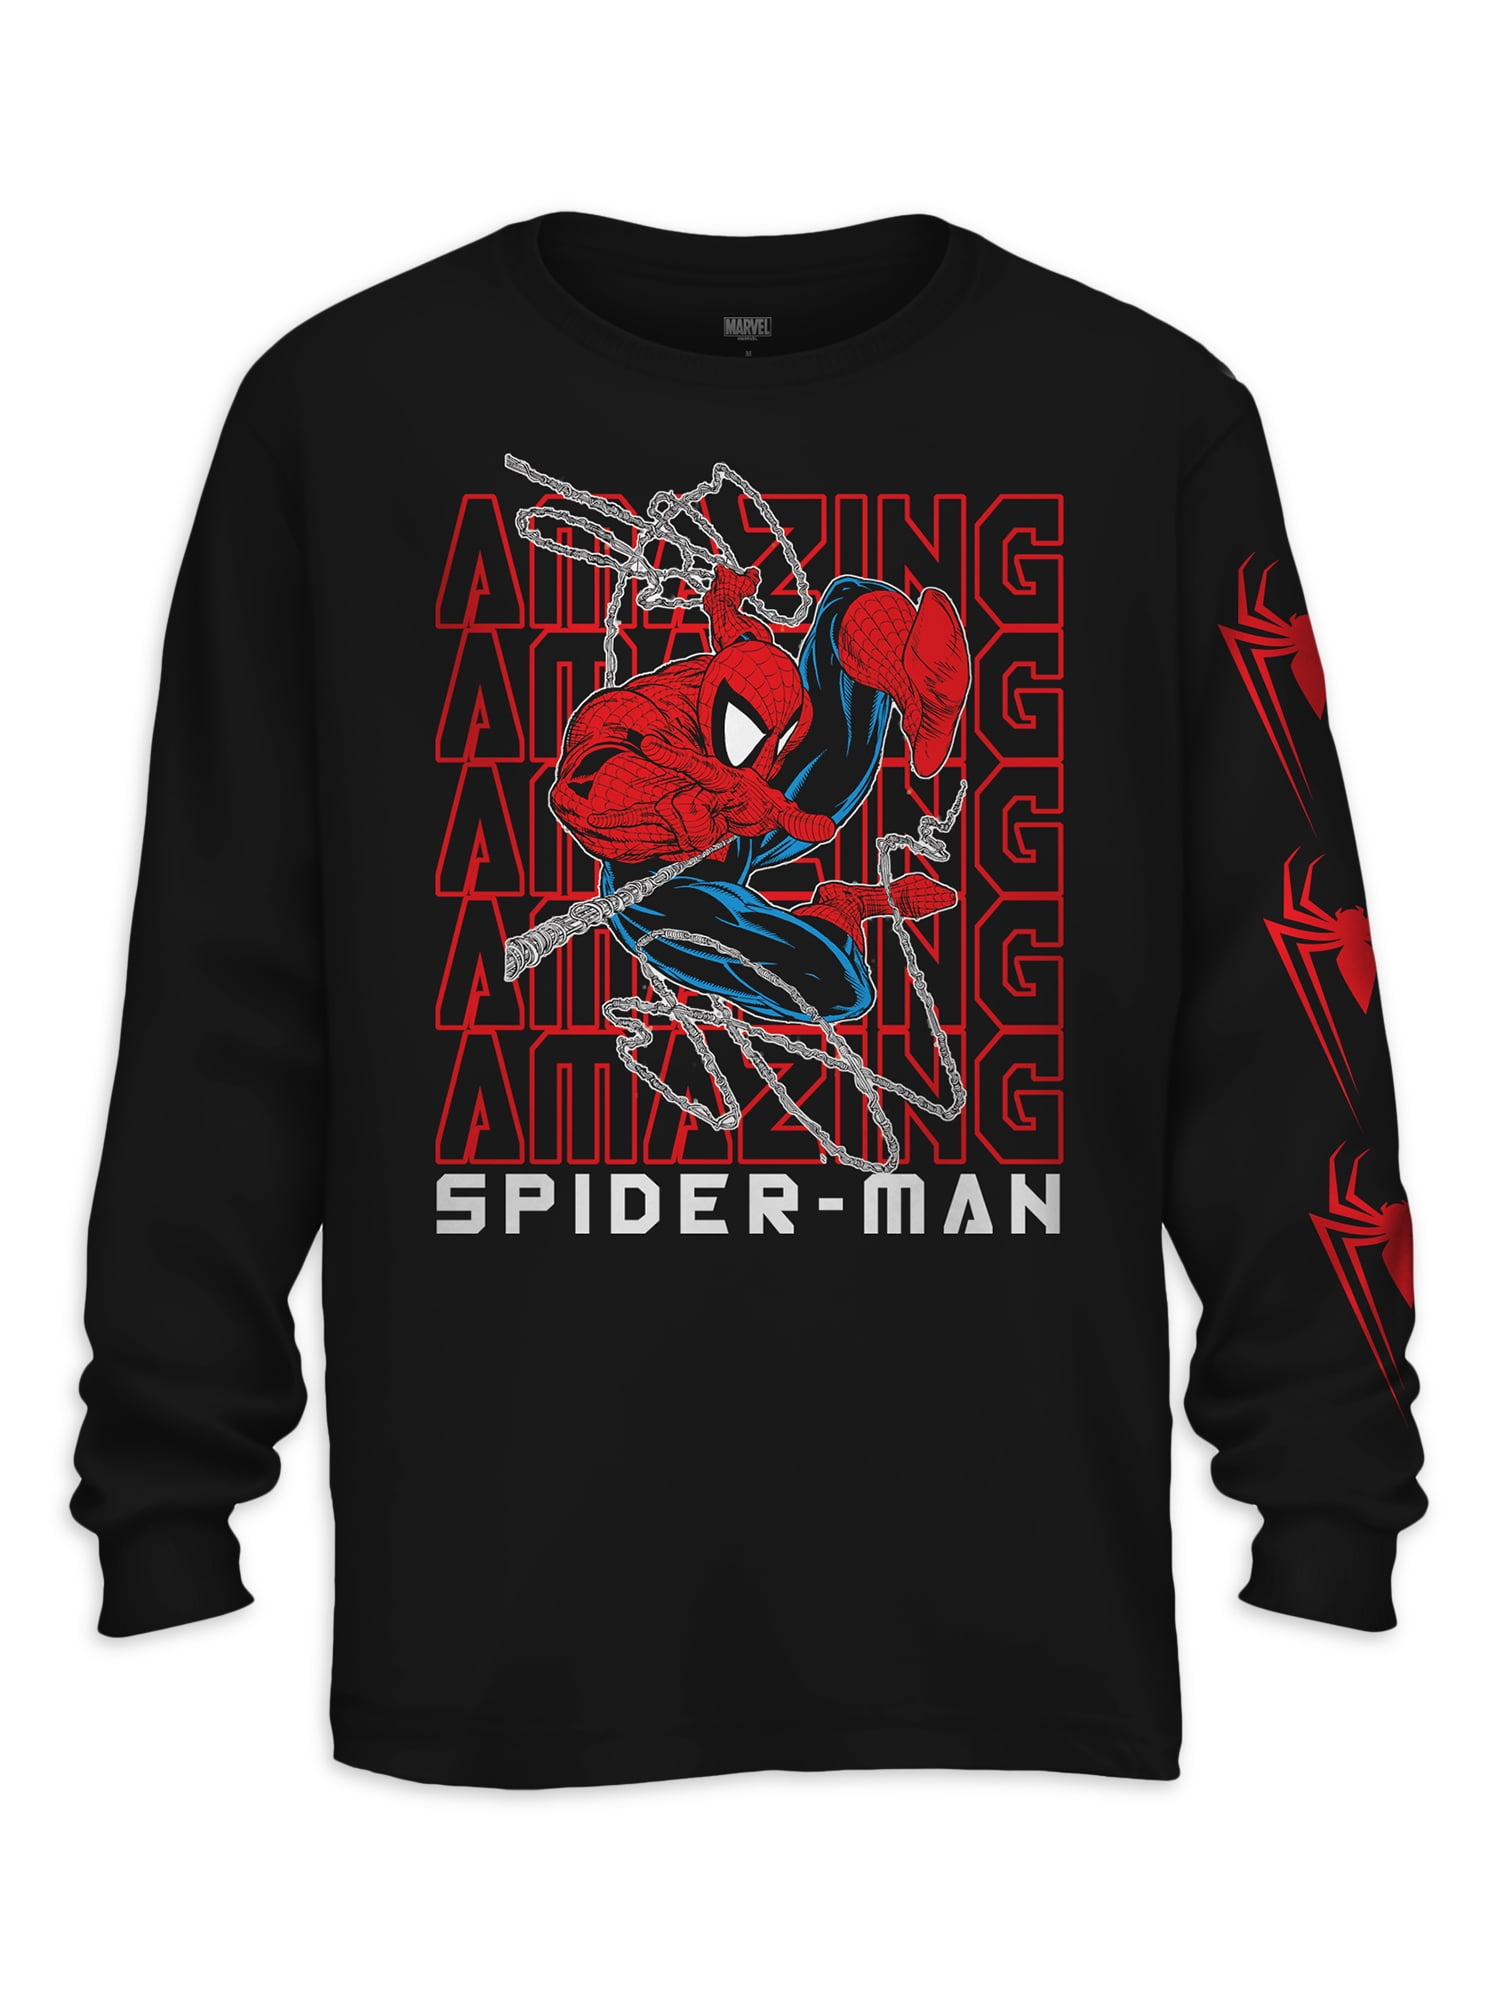 Boys Long Sleeved Tops Hoody Spiderman 1081 